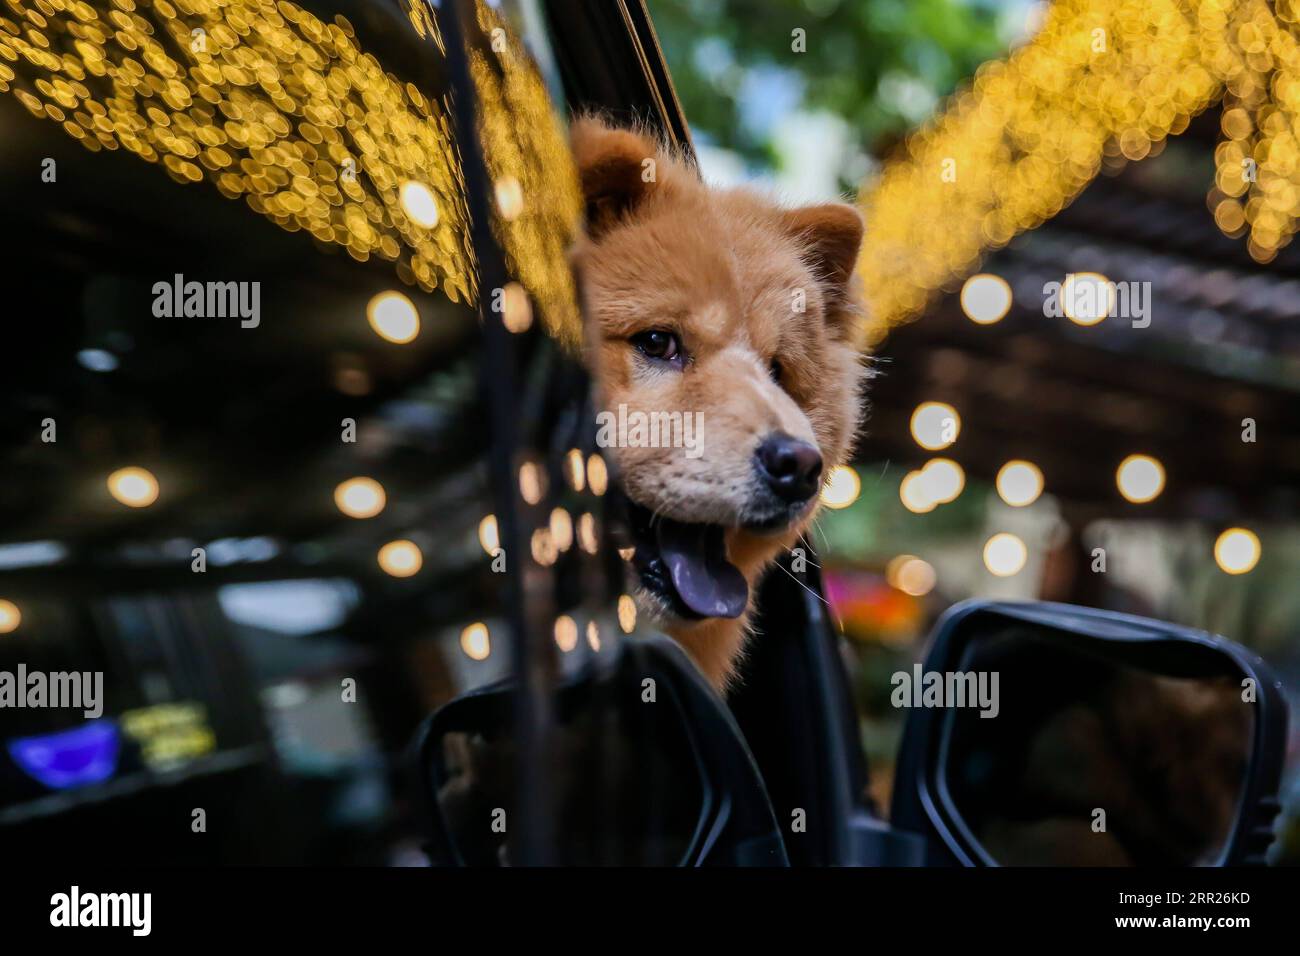 201004 -- MANILA, 4 ottobre 2020 -- Un cane domestico è visto all'interno di un'auto durante una benedizione di un animale domestico drive-thru a Manila, nelle Filippine, il 4 ottobre 2020. La benedizione degli animali domestici drive-thru si svolge in mezzo alla pandemia di COVID-19 per celebrare la giornata mondiale degli animali che si celebra ogni anno il 4 ottobre. FILIPPINE-MANILA-WORLD ANIMAL-DRIVE-THRU PET BLESSING ROUELLEXUMALI PUBLICATIONXNOTXINXCHN Foto Stock